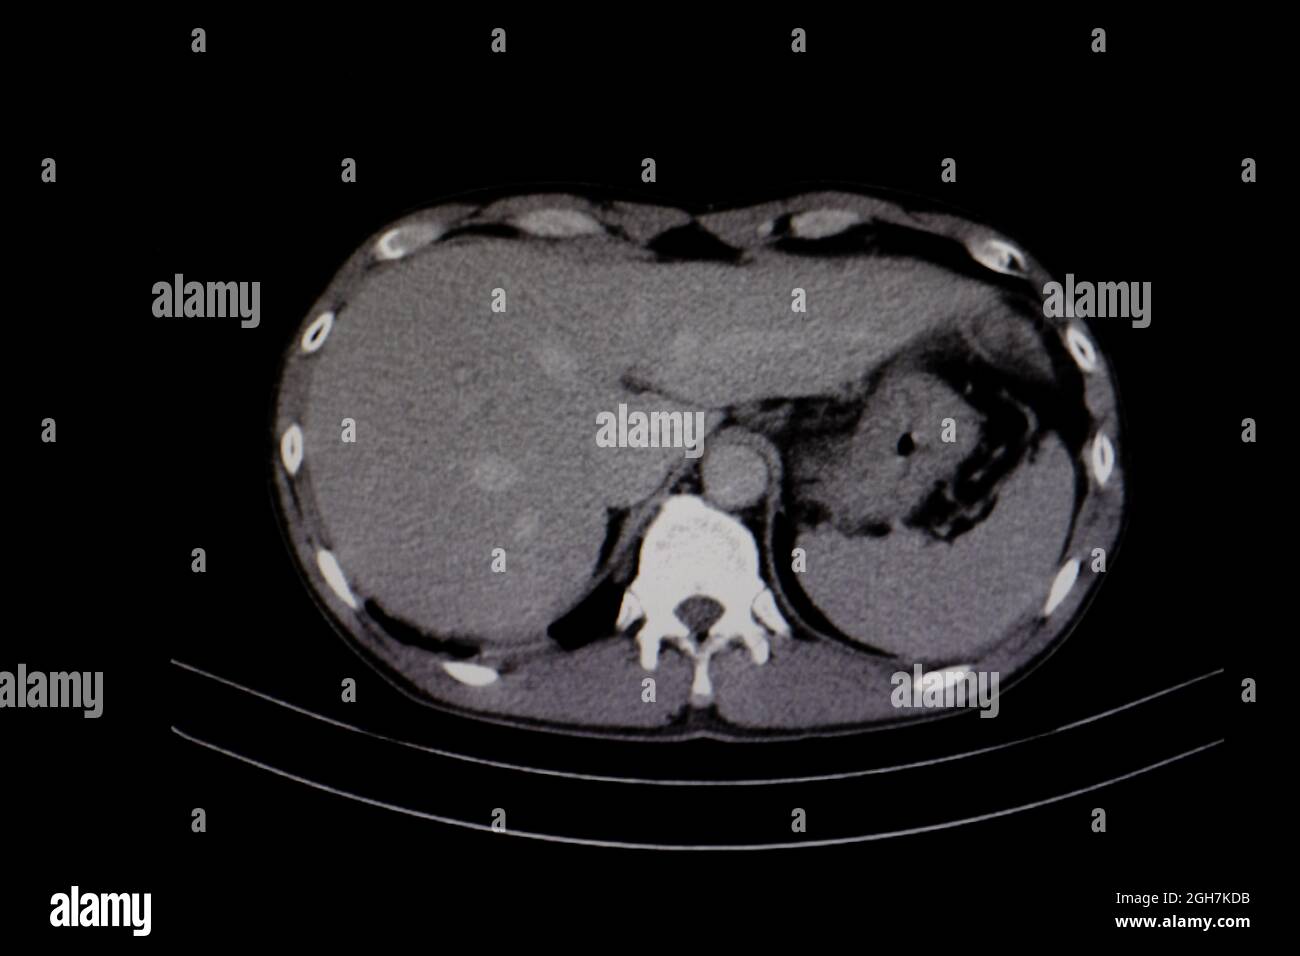 Scanner de diagnostic du foie humain Photo Stock - Alamy